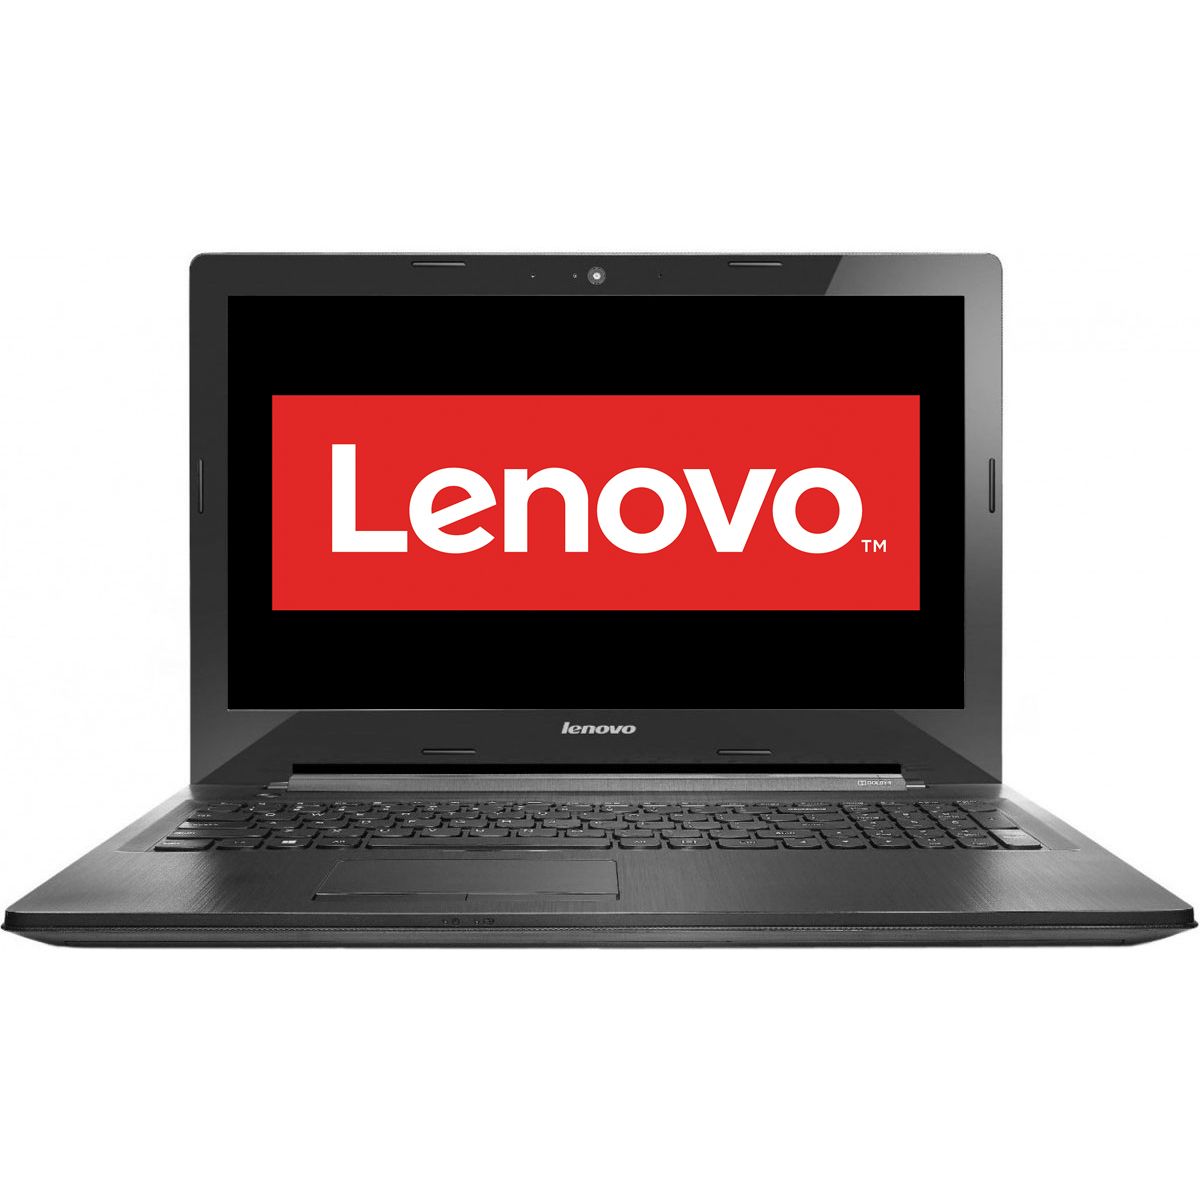  Laptop Lenovo IdeaPad G50-45, AMD QC-4000, 4GB DDR3, HDD 500 GB, AMD Radeon R5 M230 2GB, Free DOS 